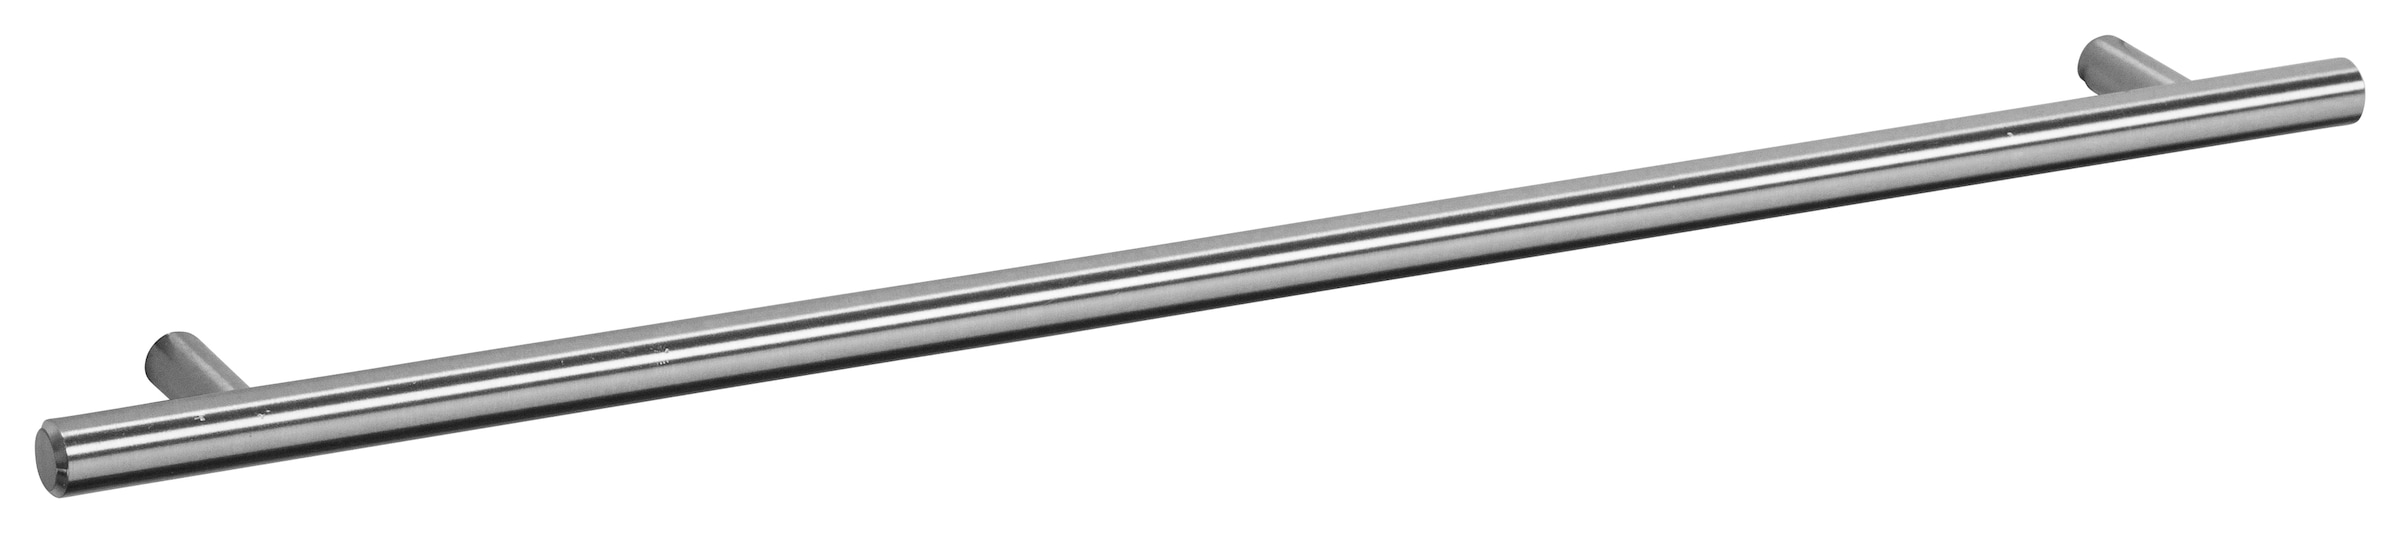 OPTIFIT Spülenschrank »Bern«, 50 cm breit, mit 1 Tür, mit höhenverstellbaren Füssen, mit Metallgriff